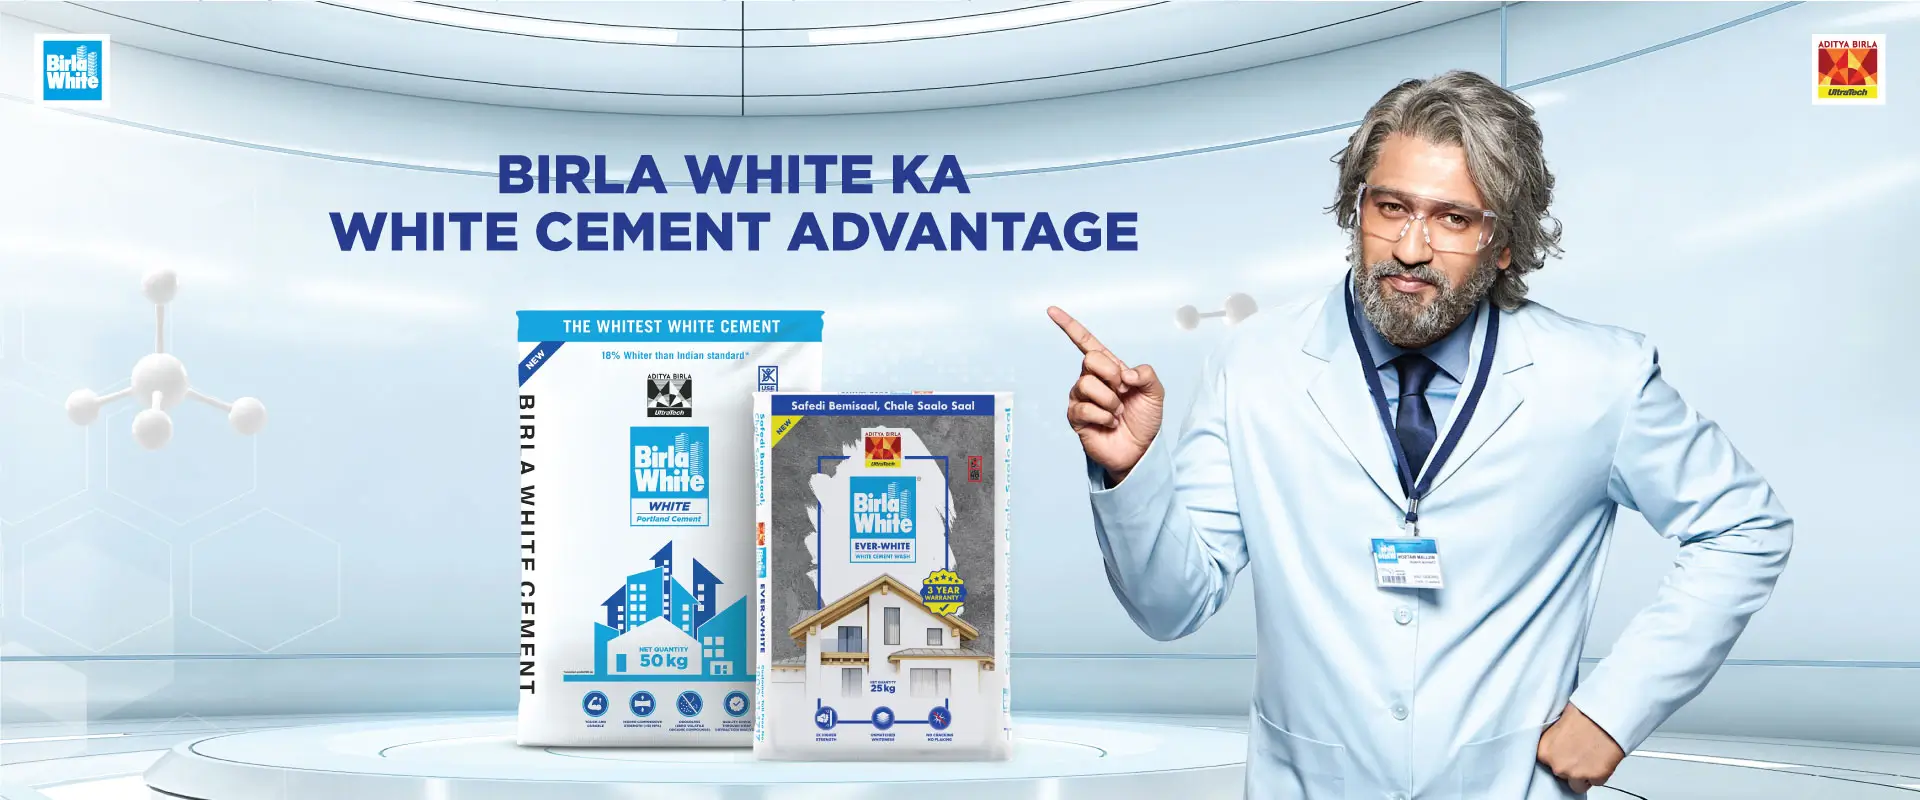 Birla White Ka White Cement Advantage